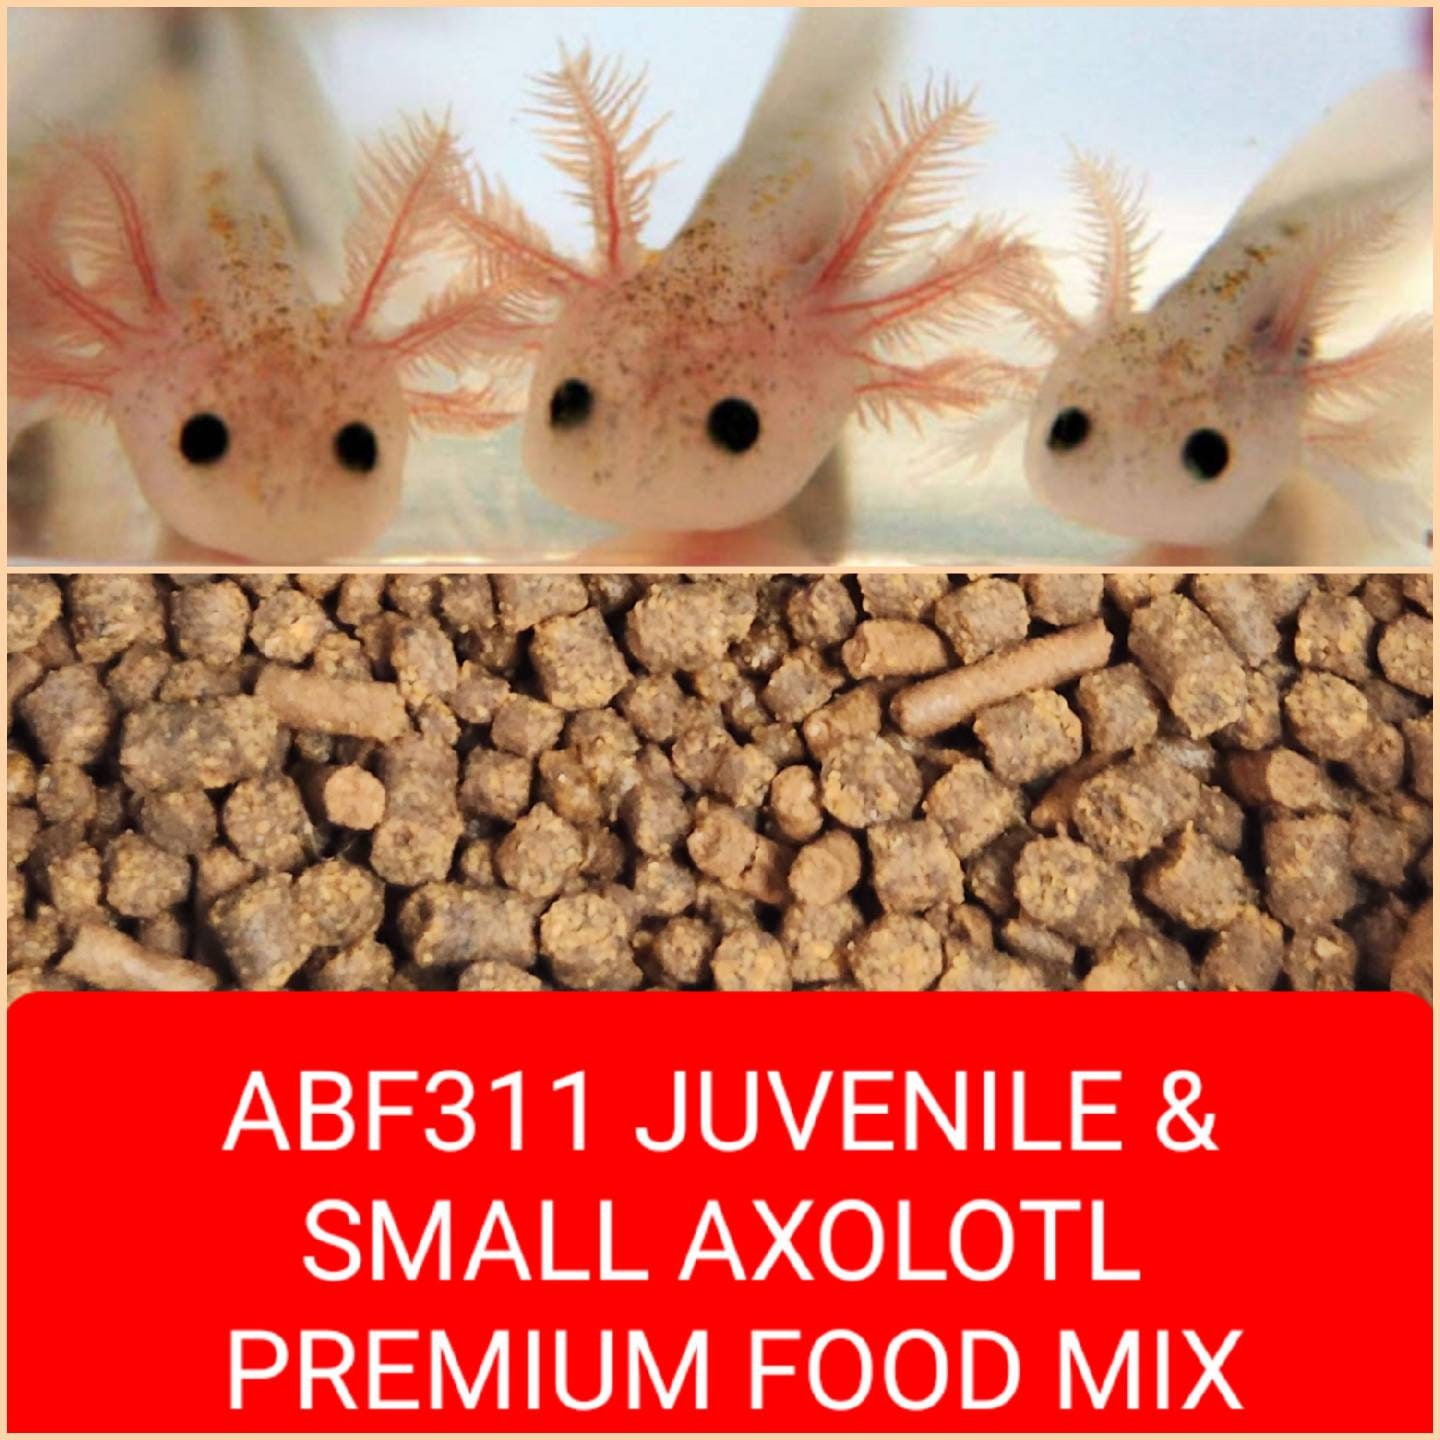 ABF ADULT AXOLOTL FOOD MIX, 4.0 SOFT BITS & BLACKWORM  STICKS,Rangen,ABF118XL